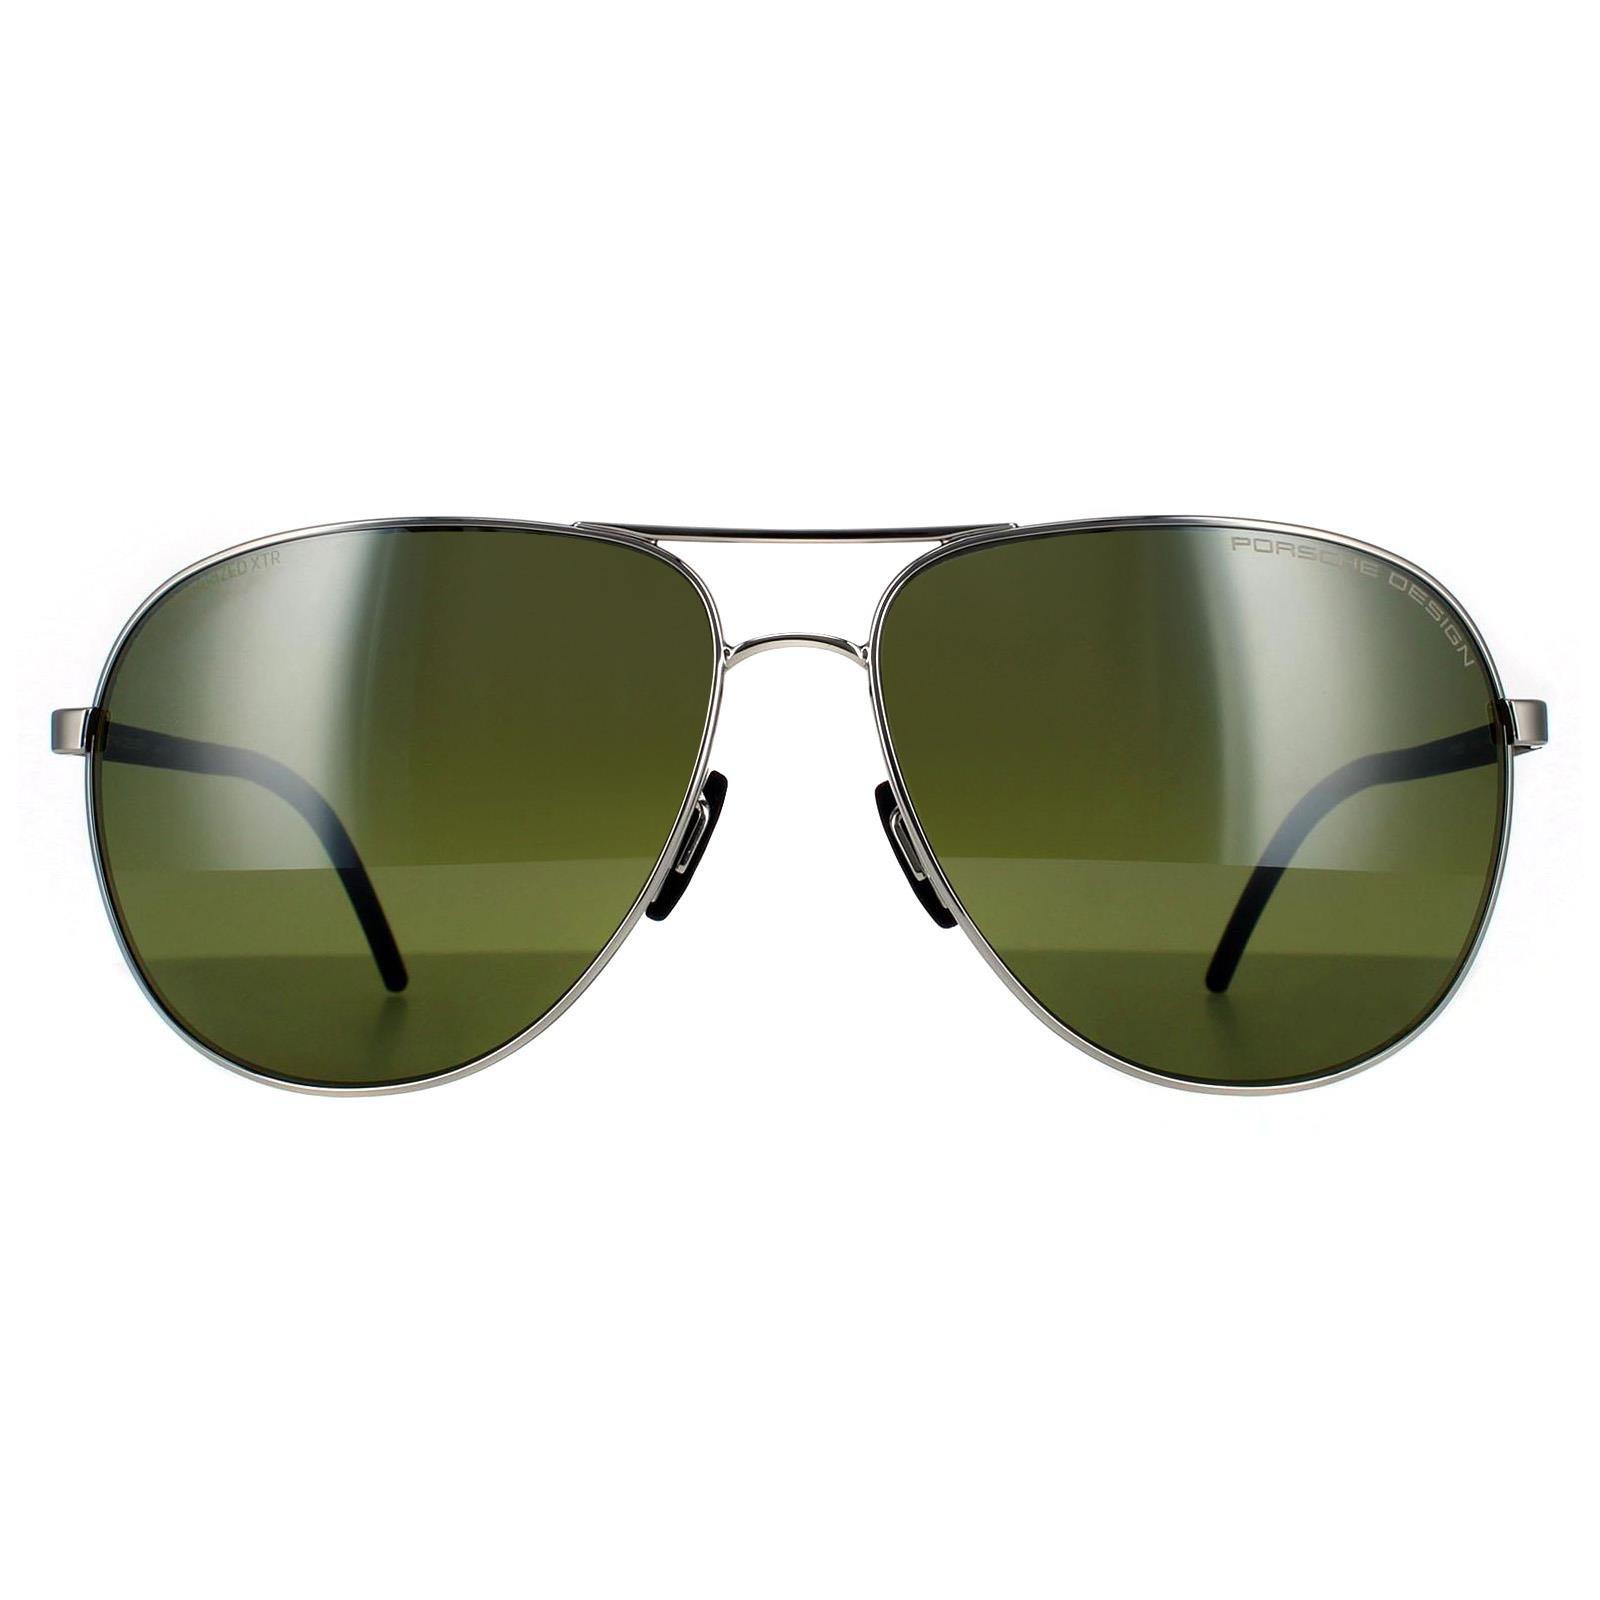 Зеленые поляризованные солнцезащитные очки Aviator Palladium Porsche Design, серебро темно синие зеркальные солнцезащитные очки aviator gun porsche design серый